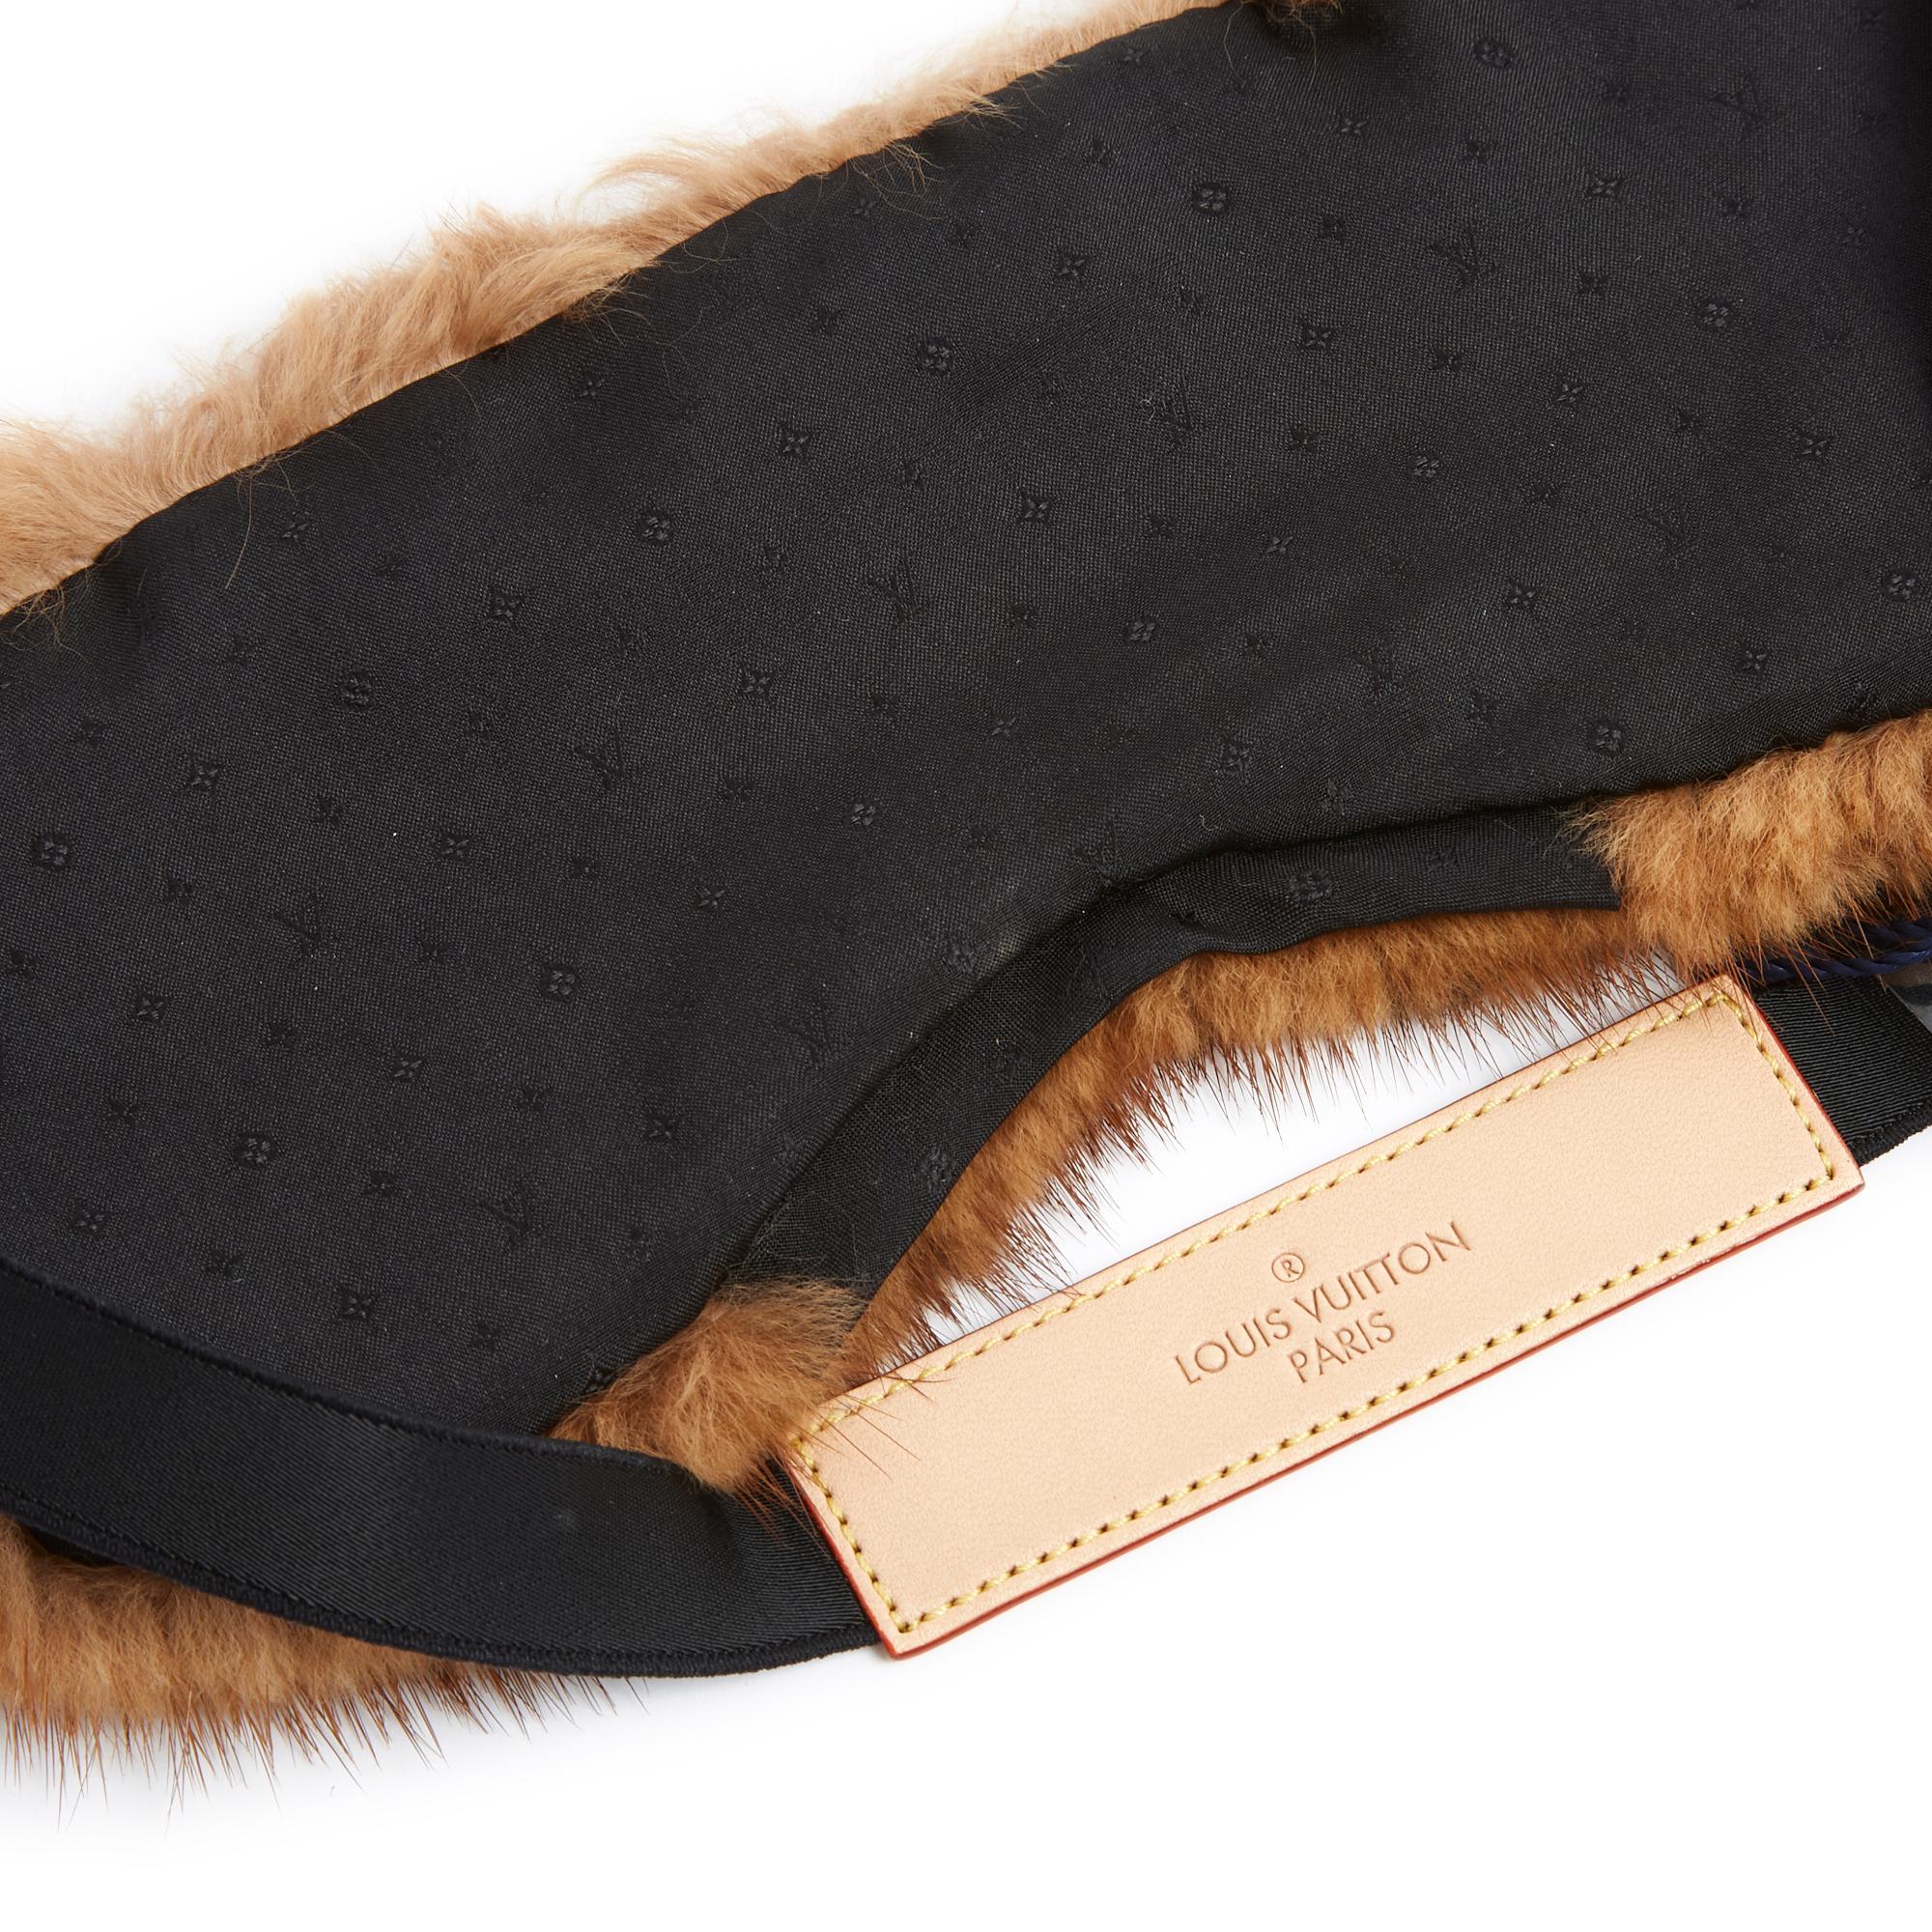 Masque de sommeil Louis Vuitton en vison naturel teinté motif Monogram doublé de toile Monogram noire, équipé d'un bandeau en cuir signé Louis Vuitton et d'un double ruban élastique pour s'ajuster à toutes les tailles, livré dans sa pochette